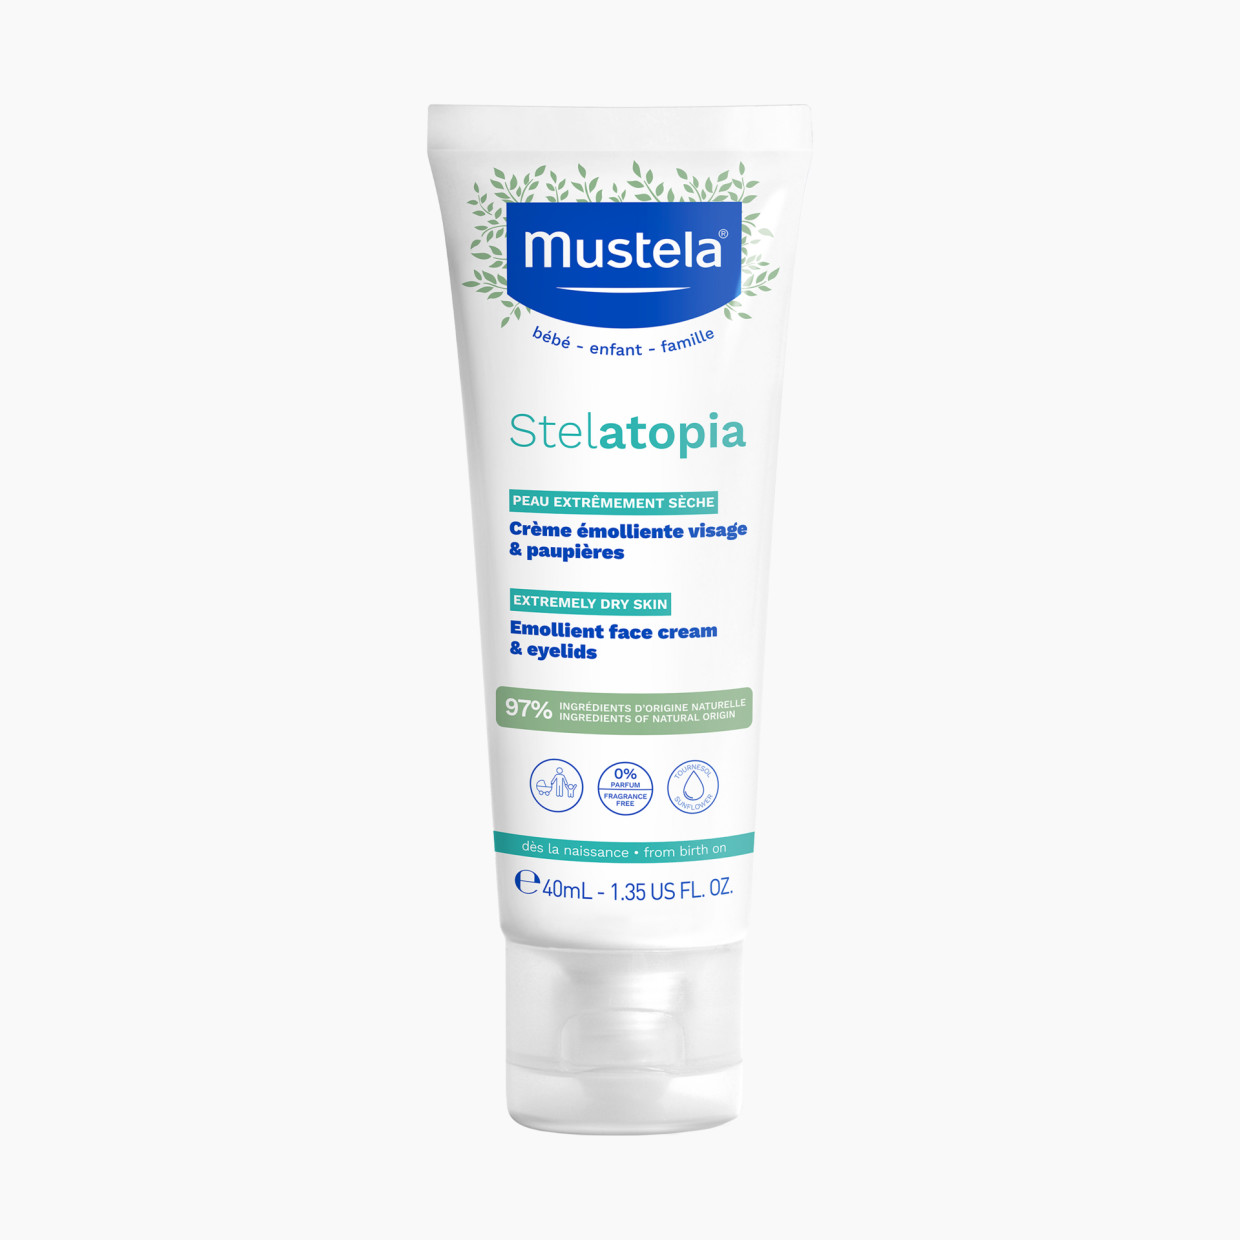 Mustela Stelatopia Emollient Face Cream - 1.35 Fl. Oz.